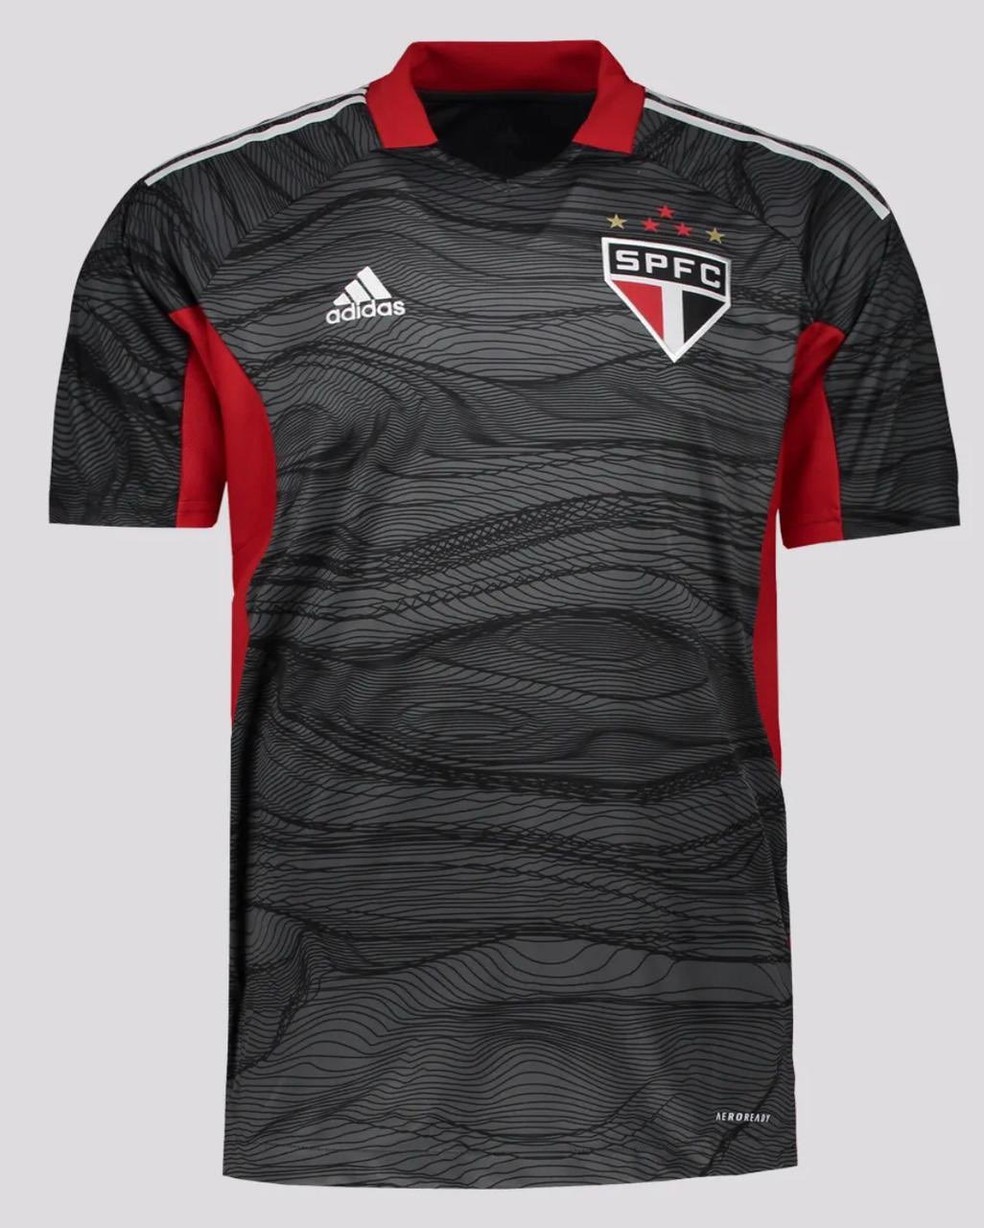 Nova camisa de goleiros do São Paulo — Foto: Reprodução